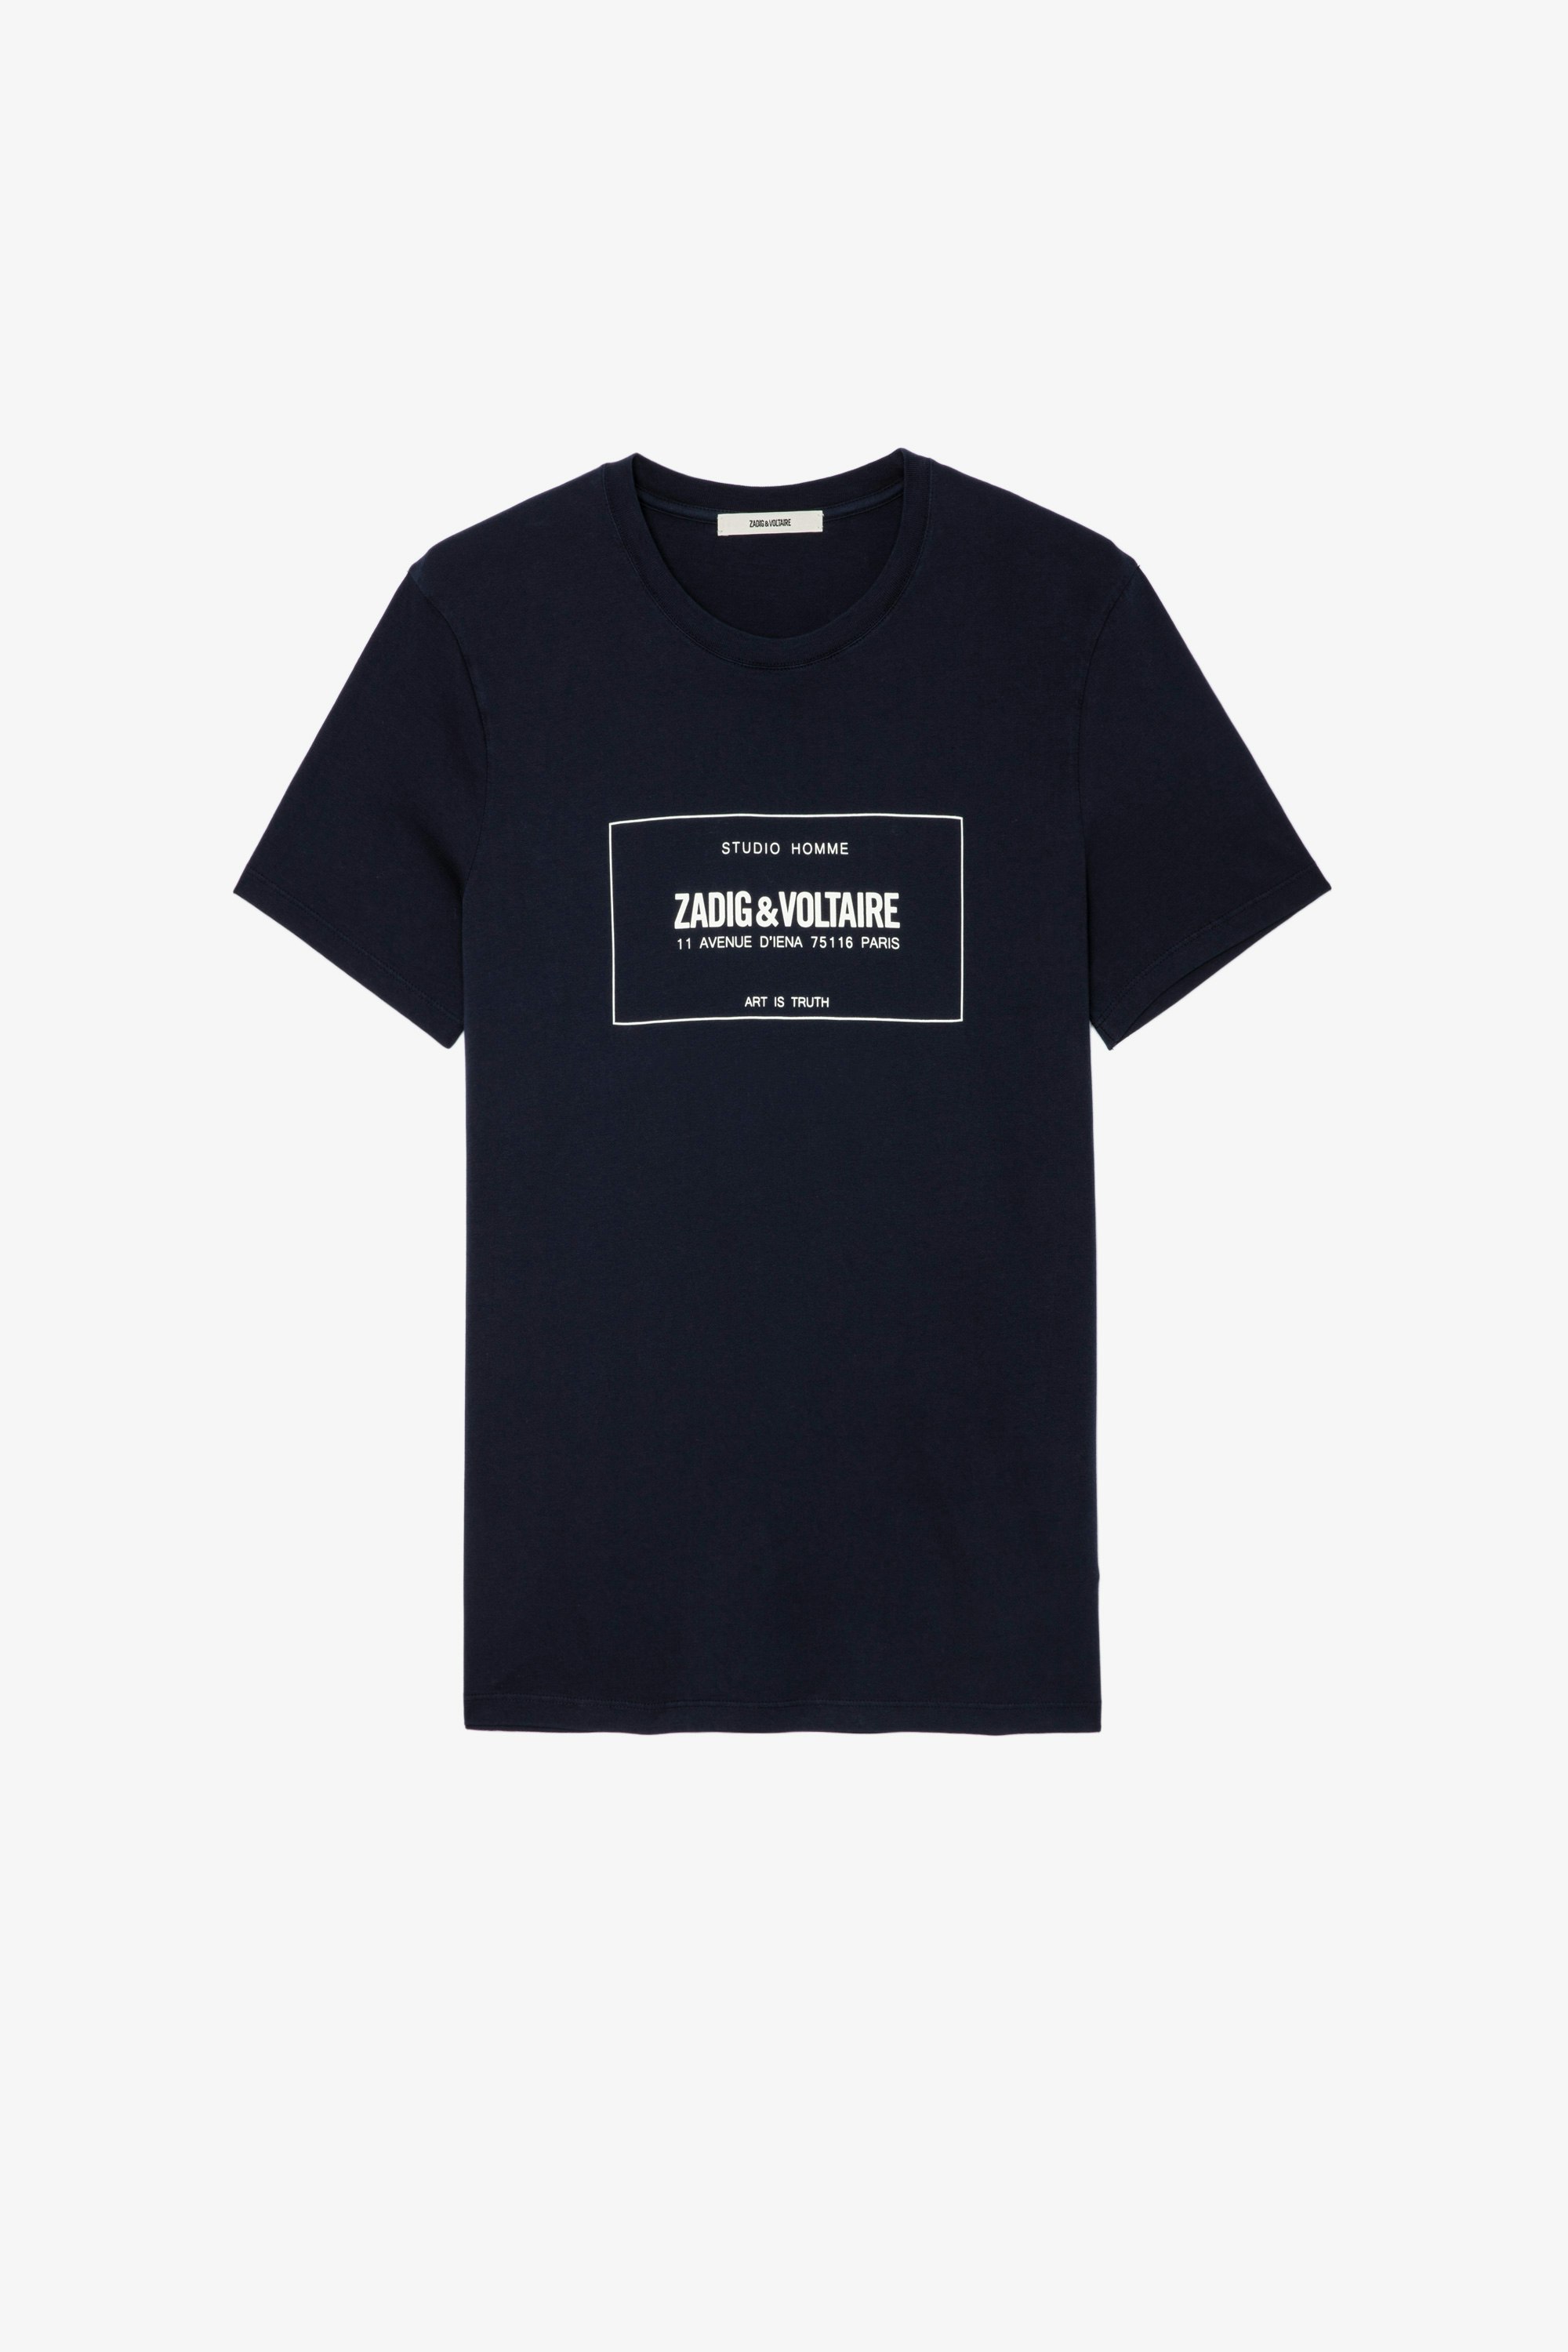 T-shirt Ted Blason T-shirt in cotone blu navy decorata con lo stemma della Maison - Uomo